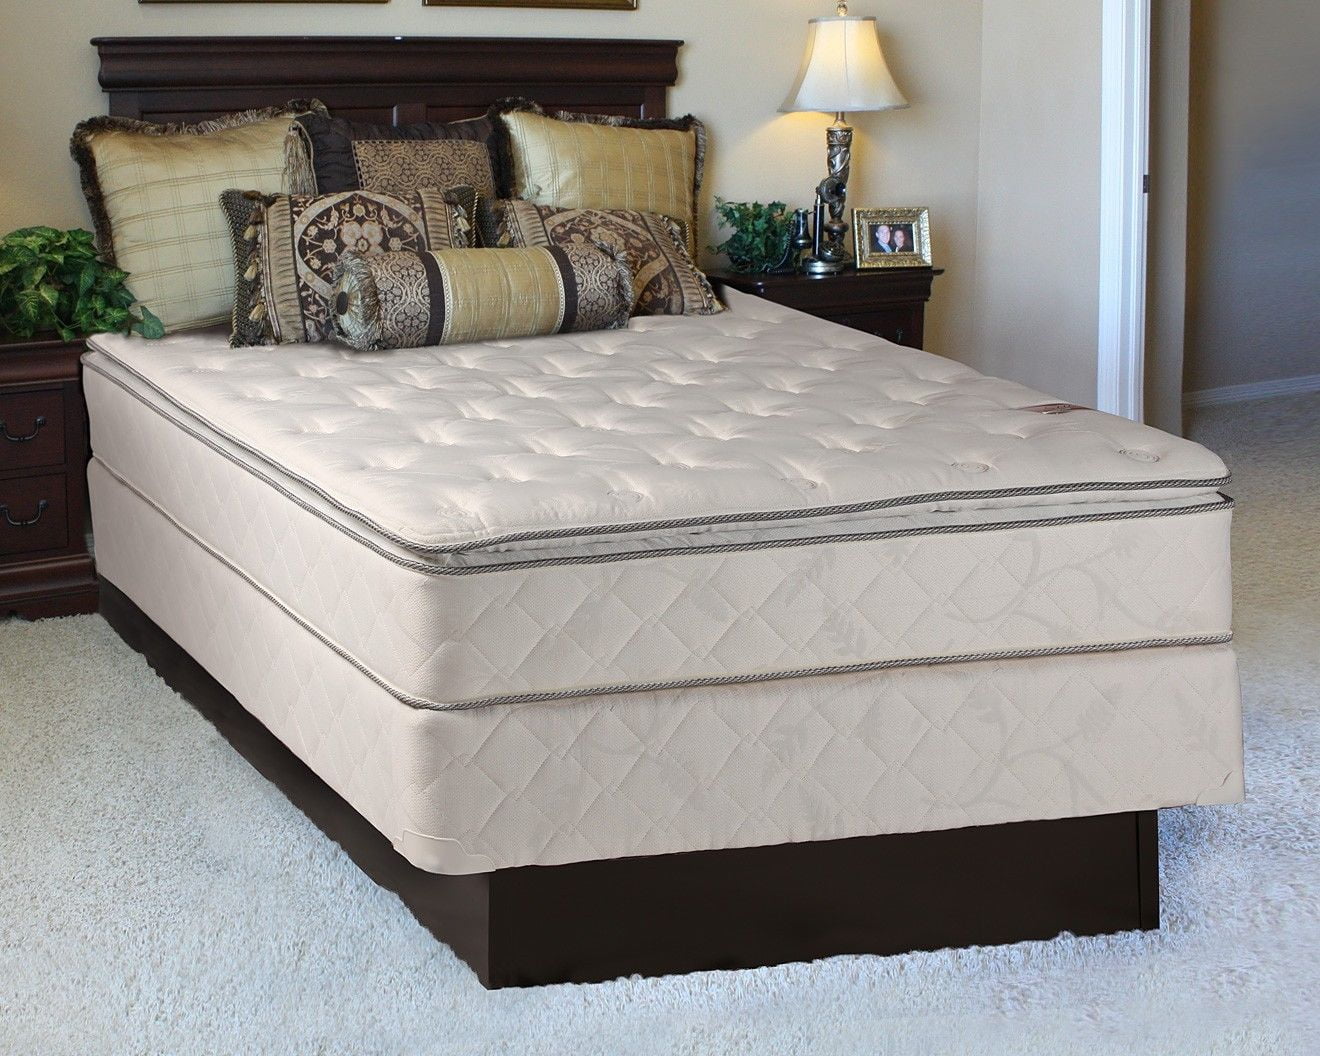 double pillow top mattress set